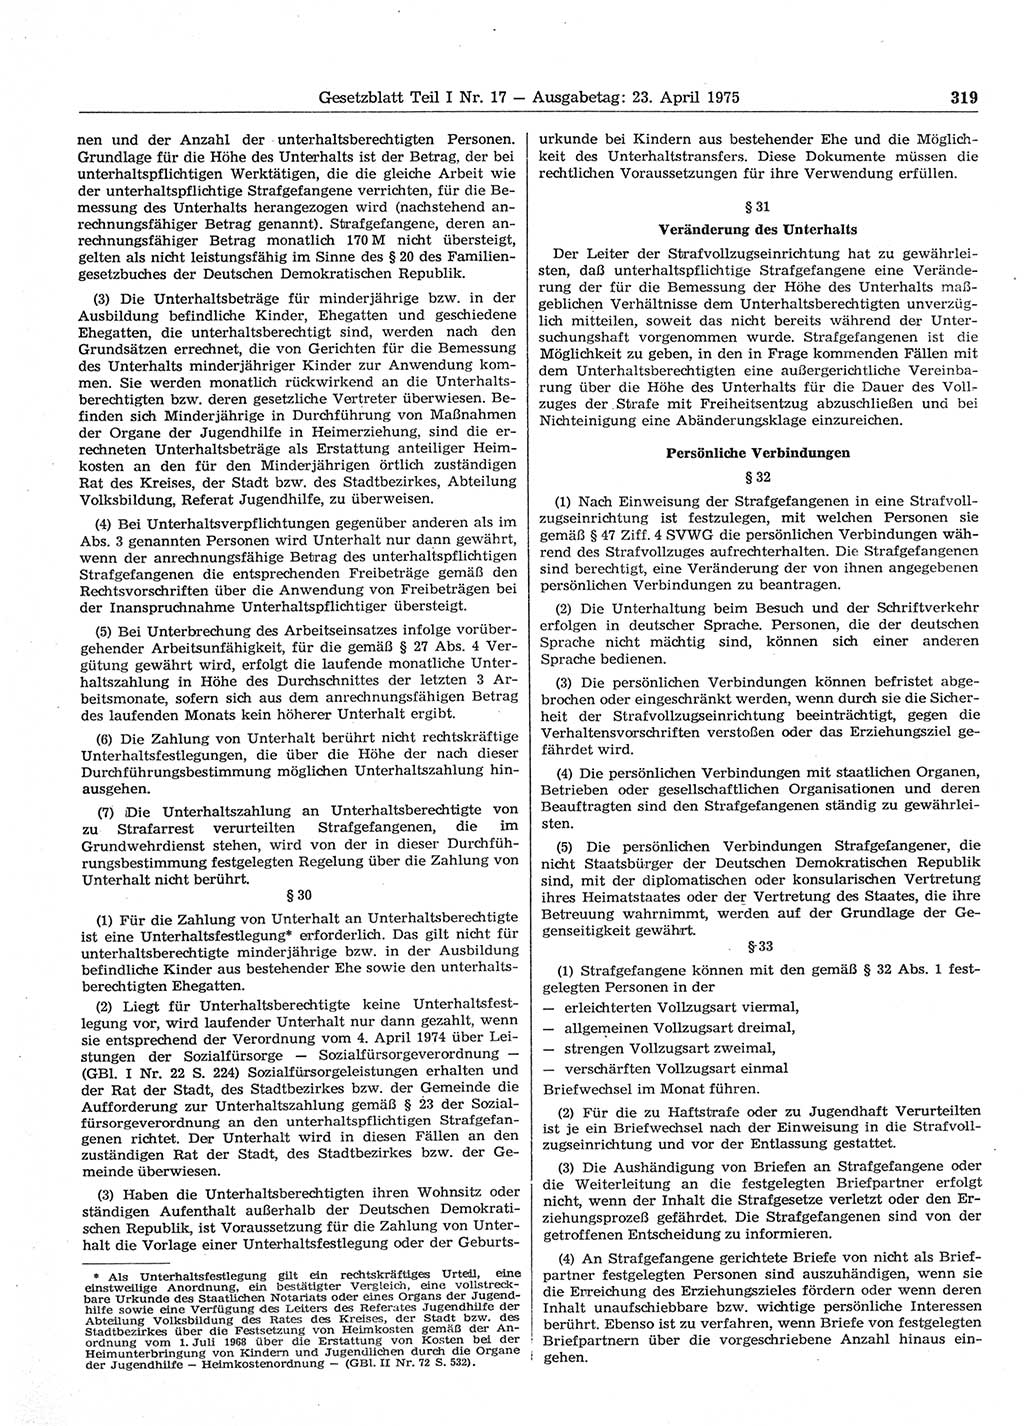 Gesetzblatt (GBl.) der Deutschen Demokratischen Republik (DDR) Teil Ⅰ 1975, Seite 319 (GBl. DDR Ⅰ 1975, S. 319)